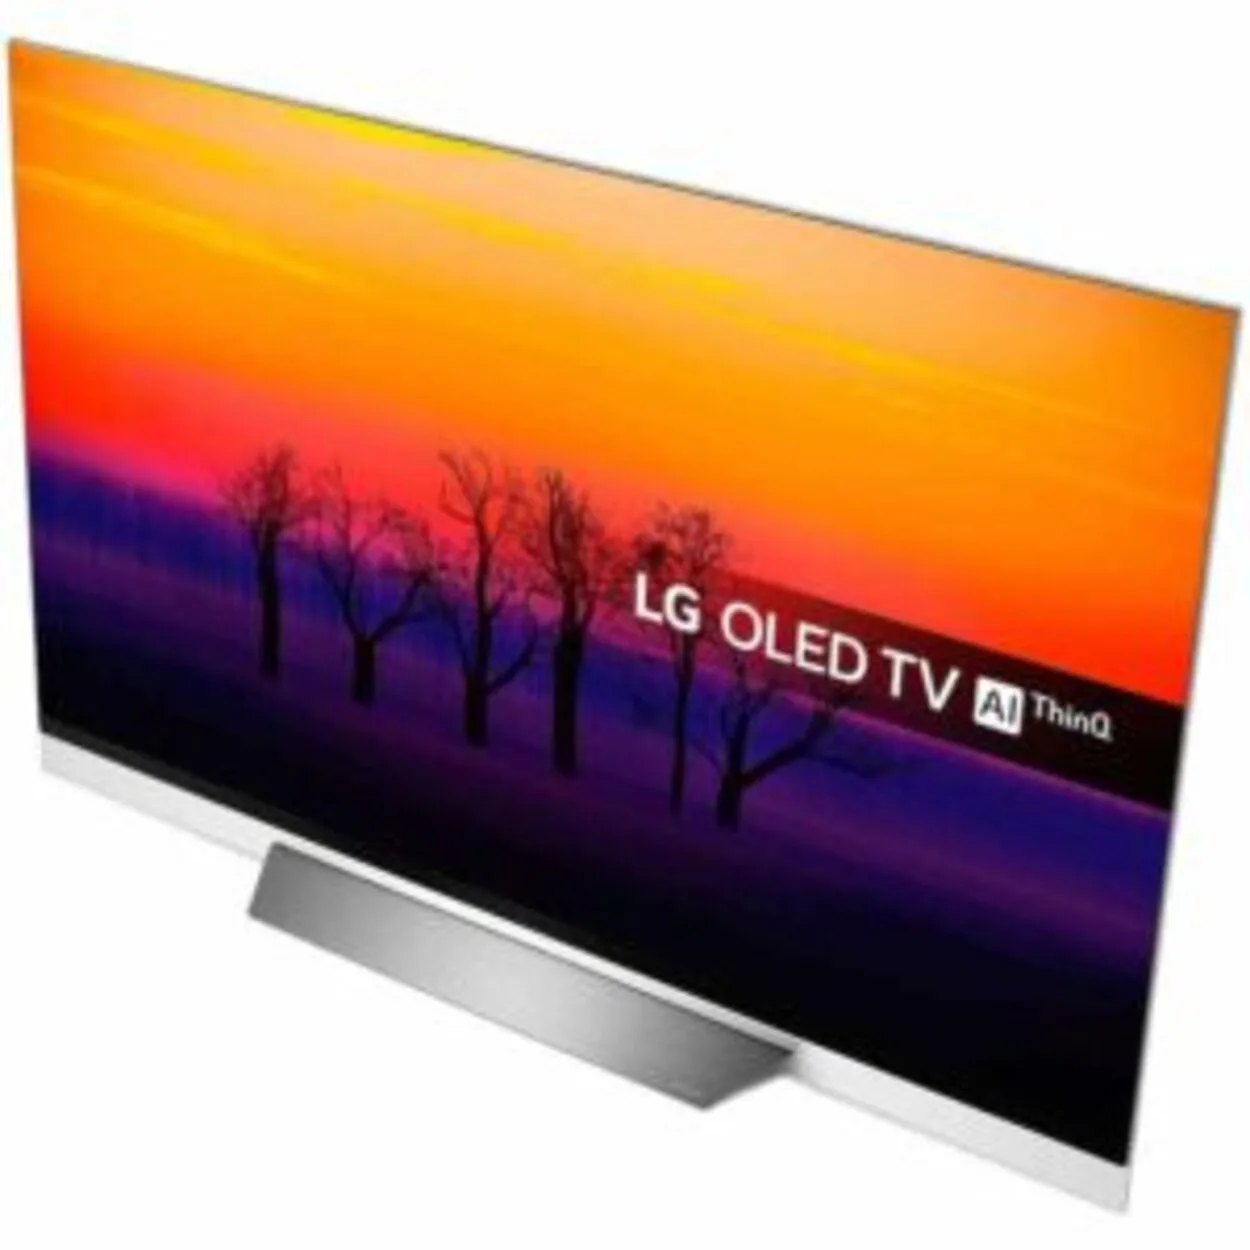 ThinQ LG OLED TV